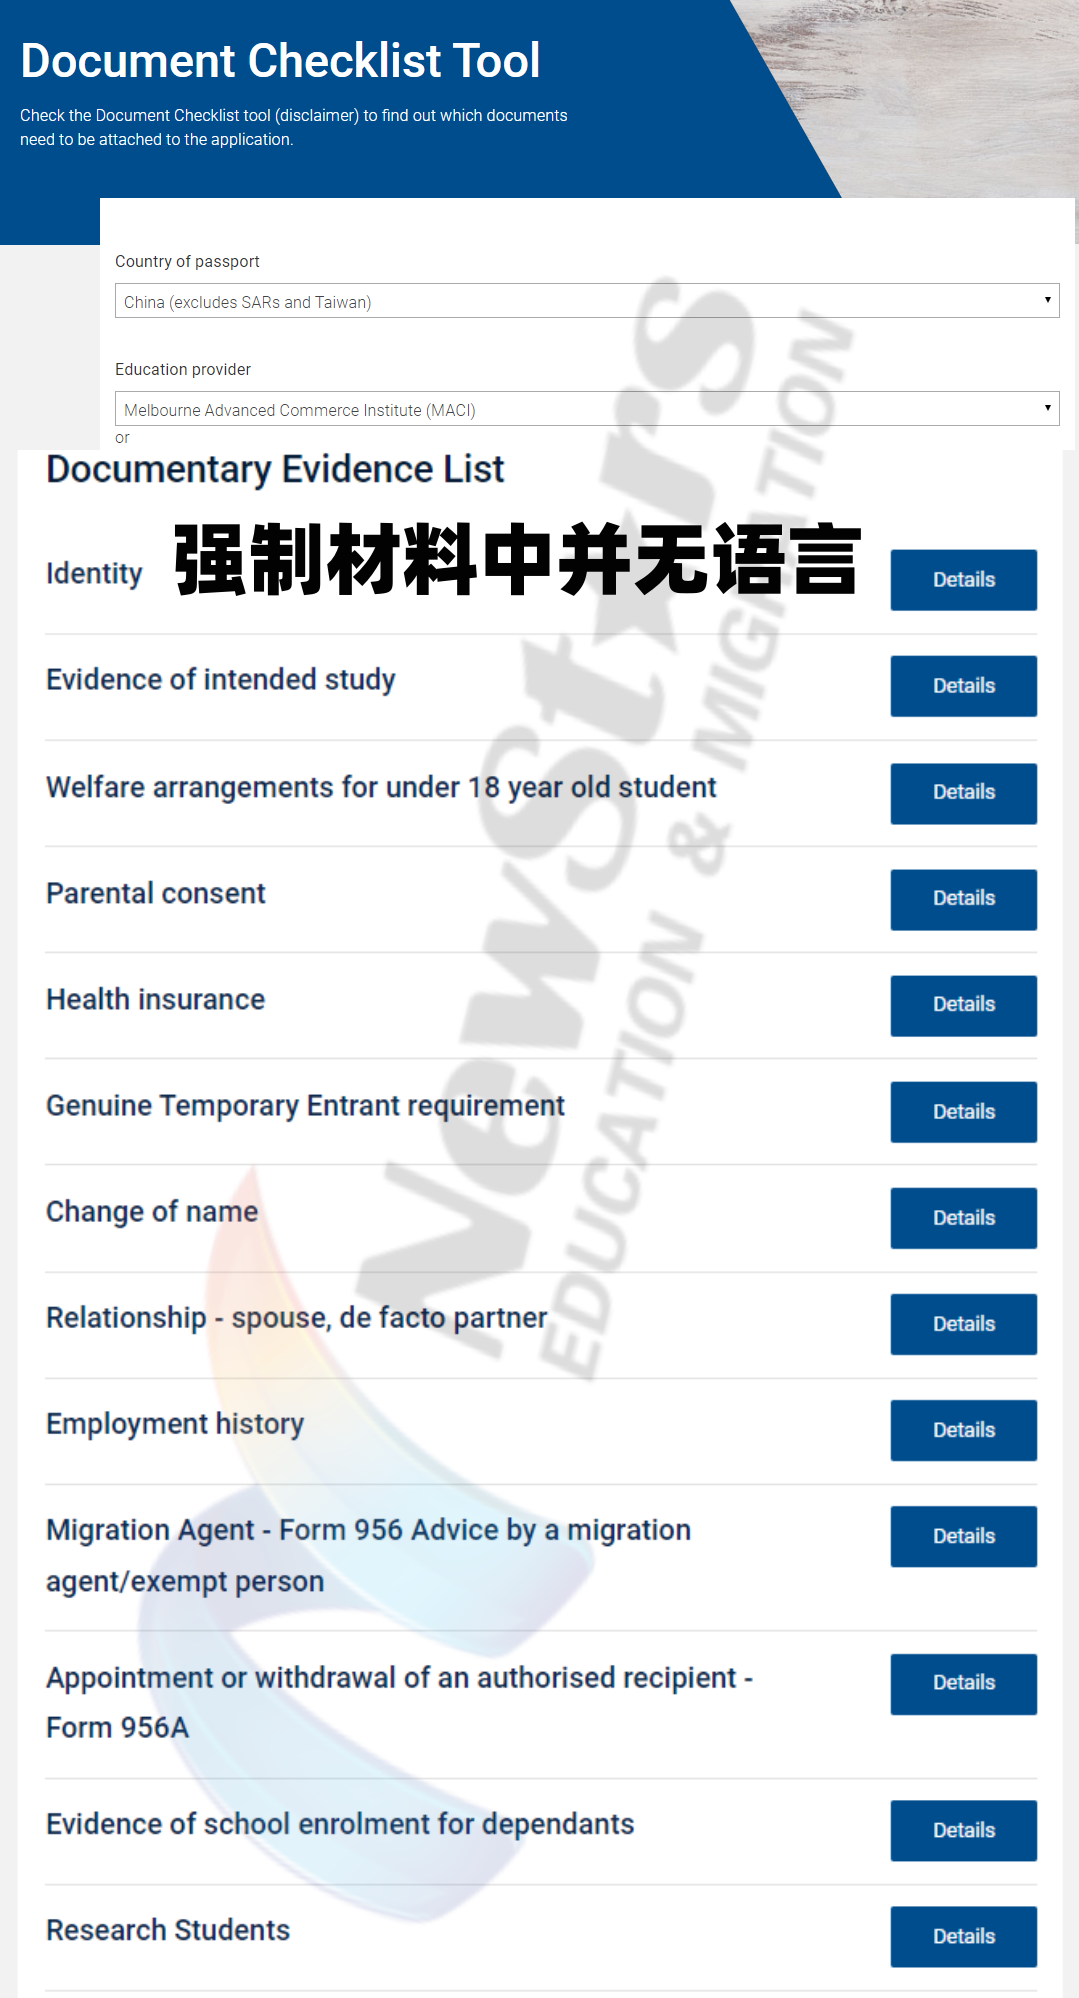 申请人Yongge (Henry) Qi持有中国大陆护照在澳洲学签申请中的风险等级level1(最低），因此语言成绩非强制要求的签证申请材料。